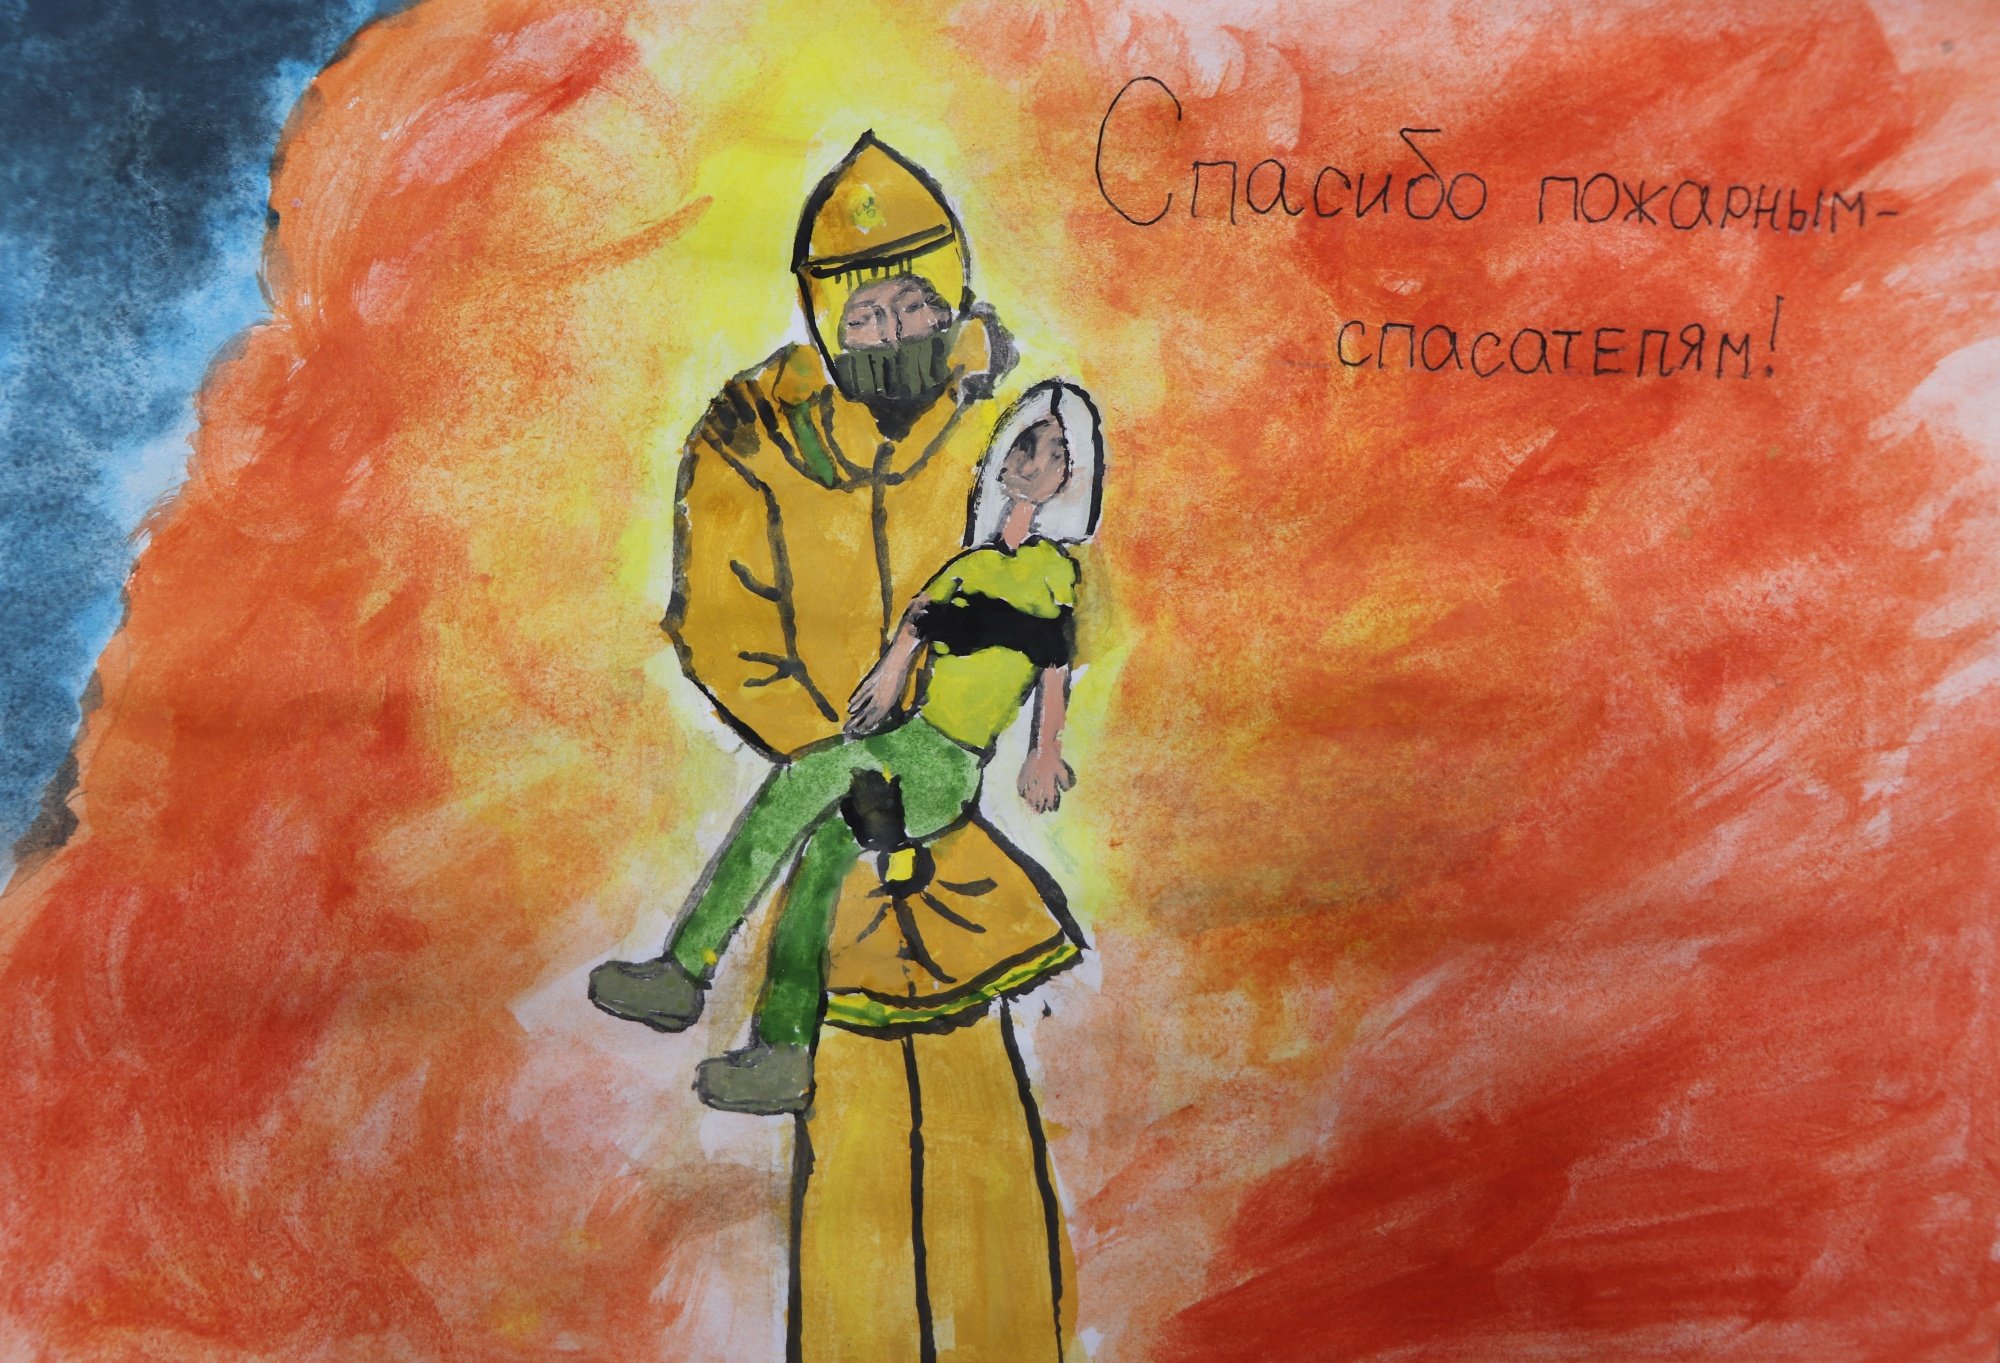 Конкурс рисунков ко Дню пожарной охраны